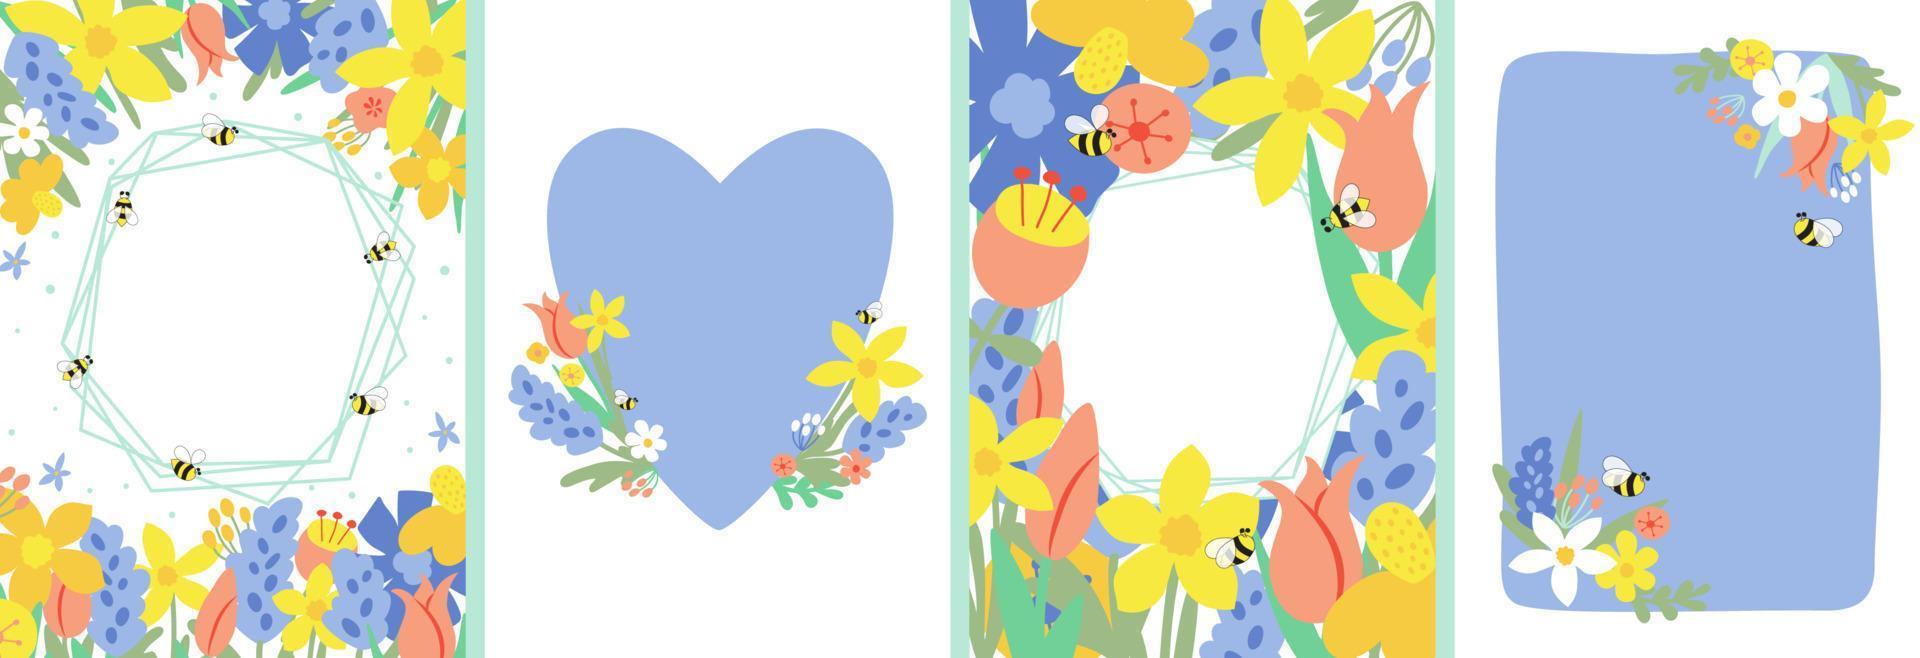 floral primavera carteles colocar, fondos de pantalla, marco, cubiertas, tarjetas primavera flores, miel abejas, hojas, mano dibujado floral ramos de flores, flor composiciones madres día tarjetas vector ilustración recopilación.